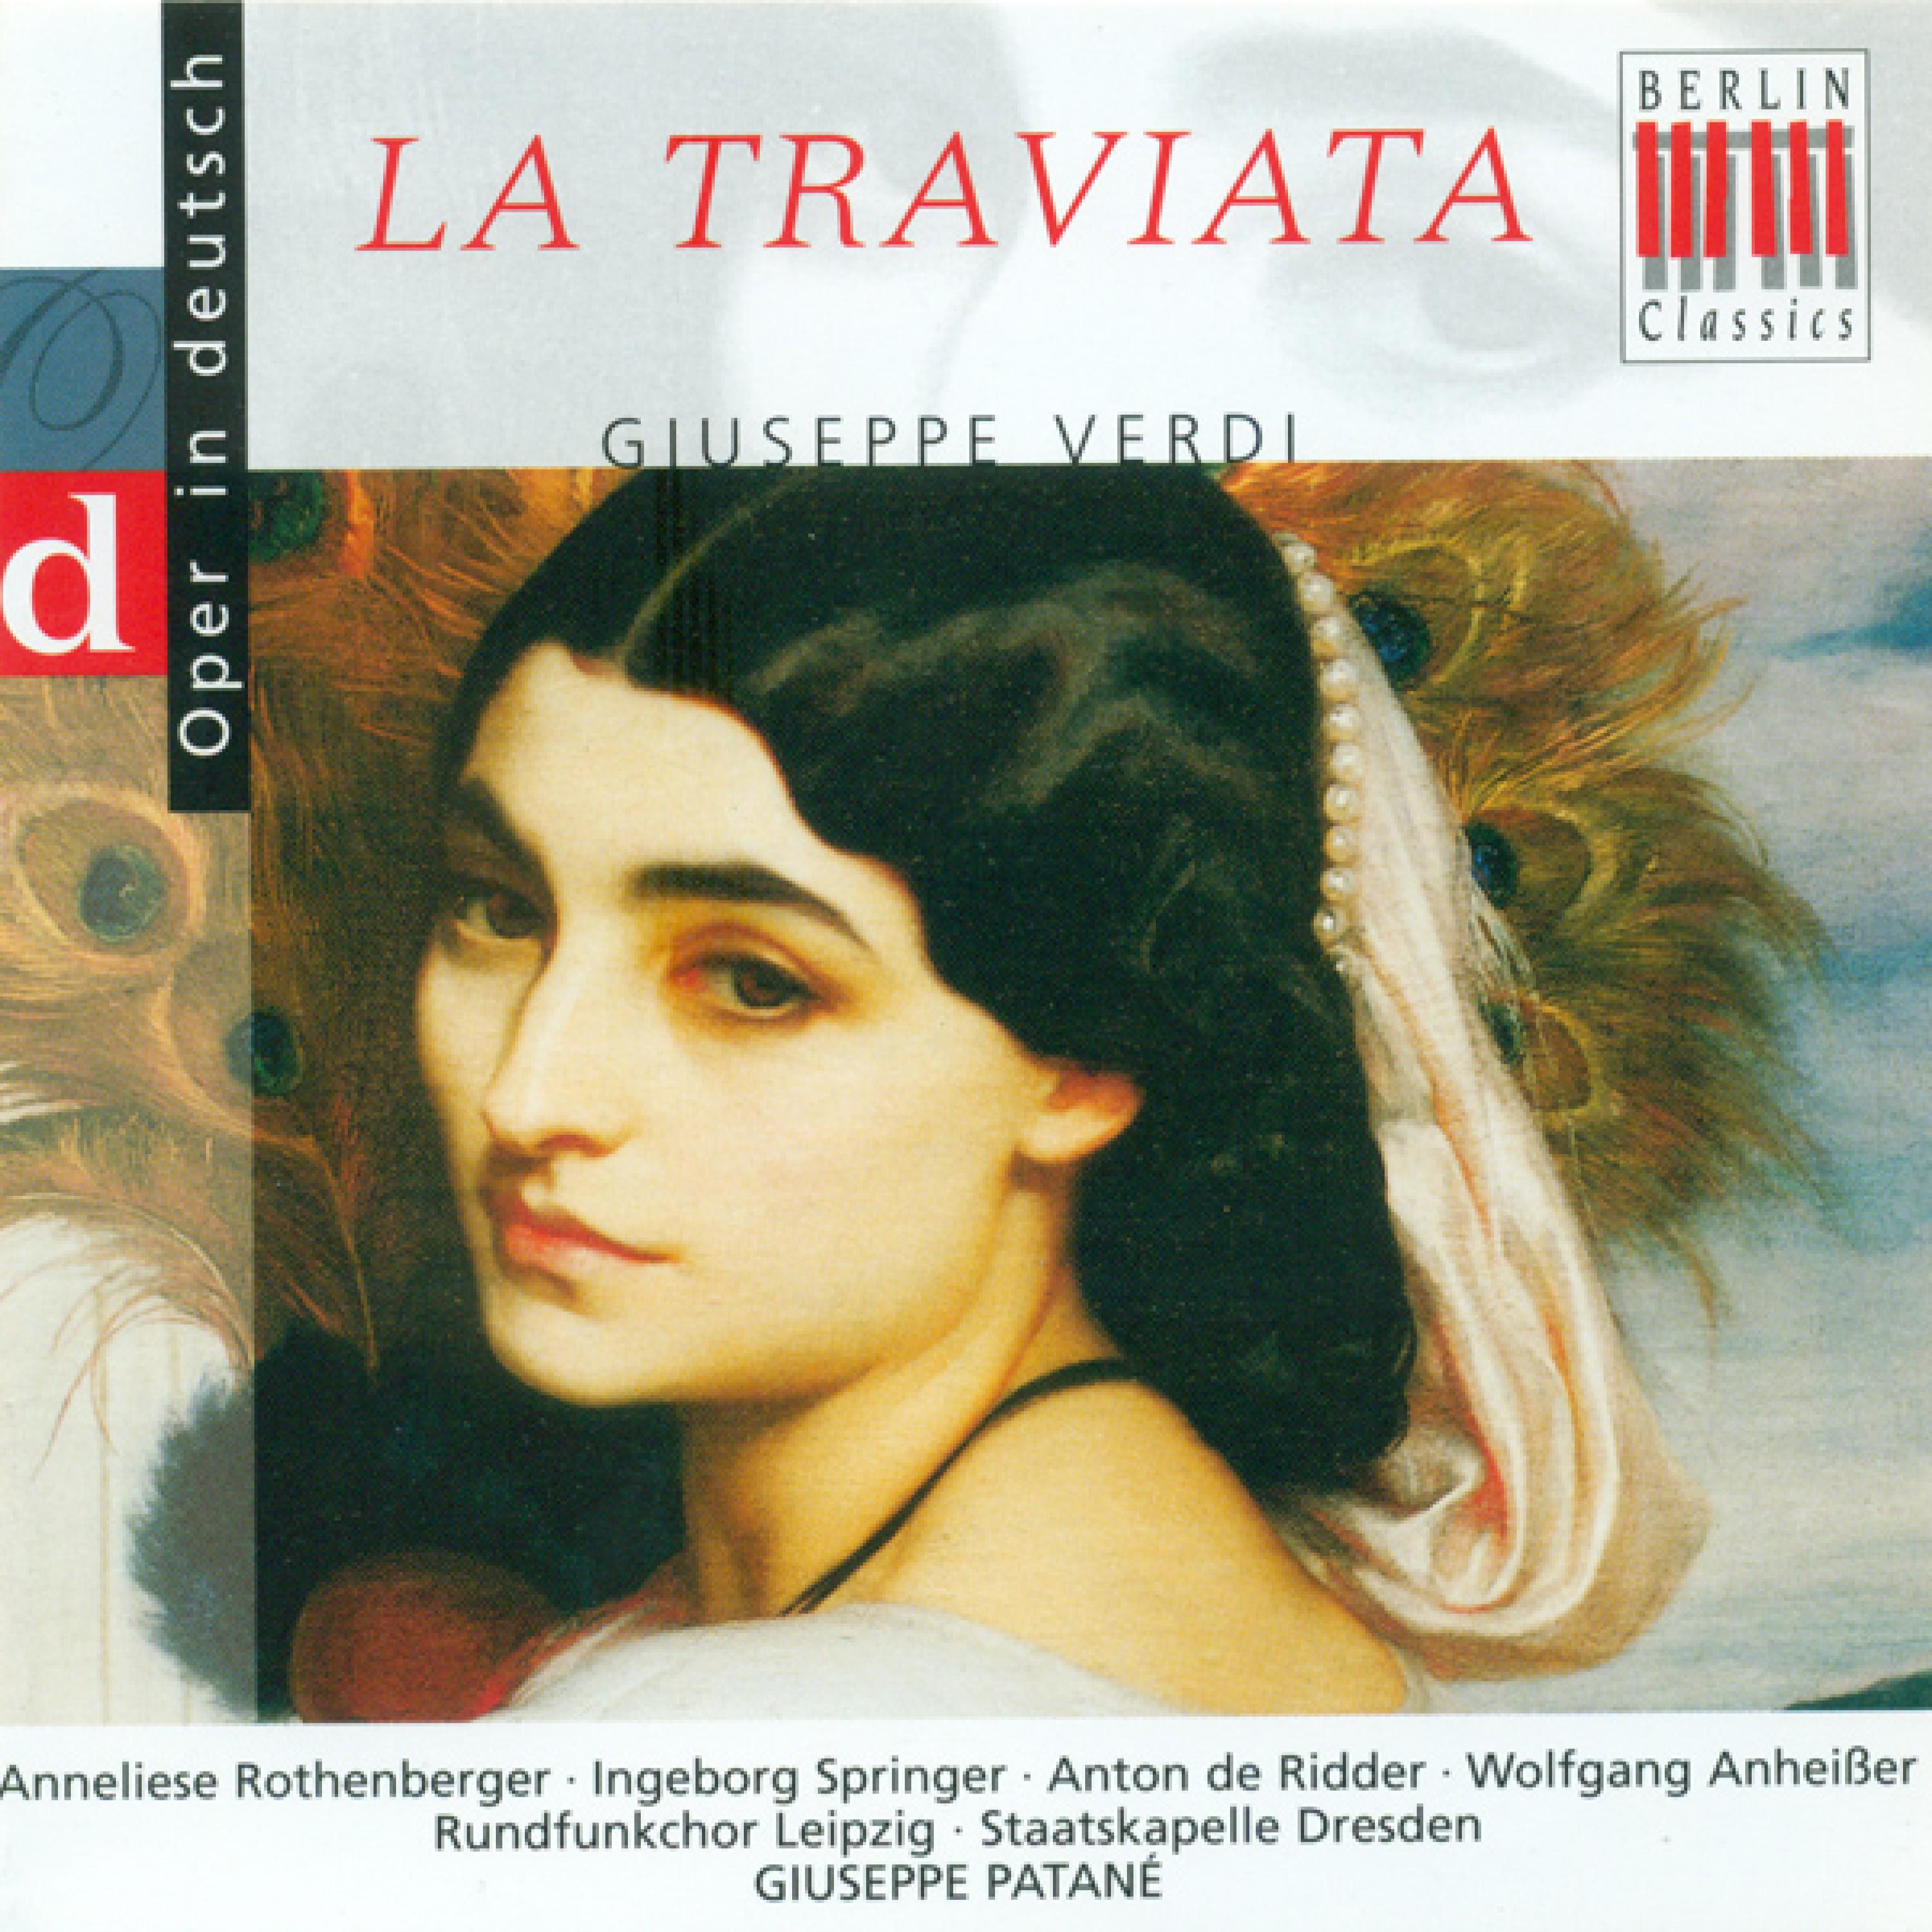 La Traviata, Act II: "Maskenscherz soll die Nacht uns froh vertreiben"